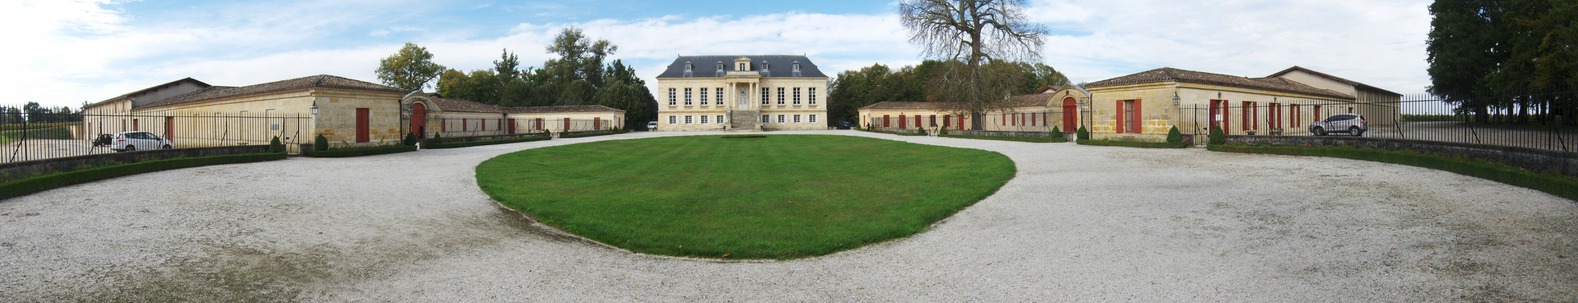 La Louvière Château, one of the many vineyard in the region